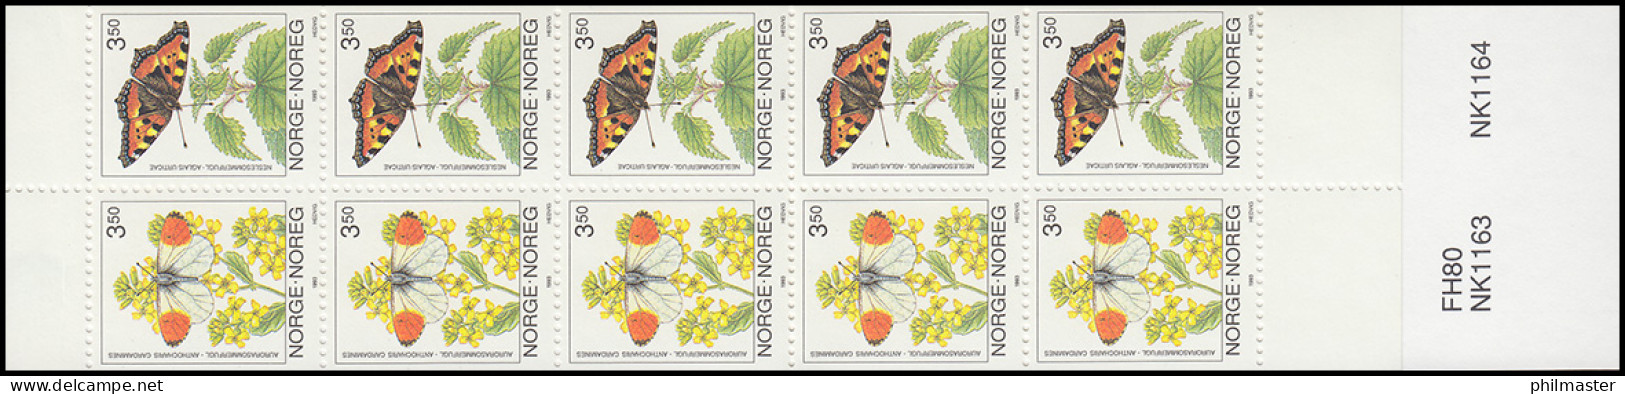 Norwegen Markenheftchen 20 Schmetterlinge Butterflies Sommerfugler 1993, ** - Booklets